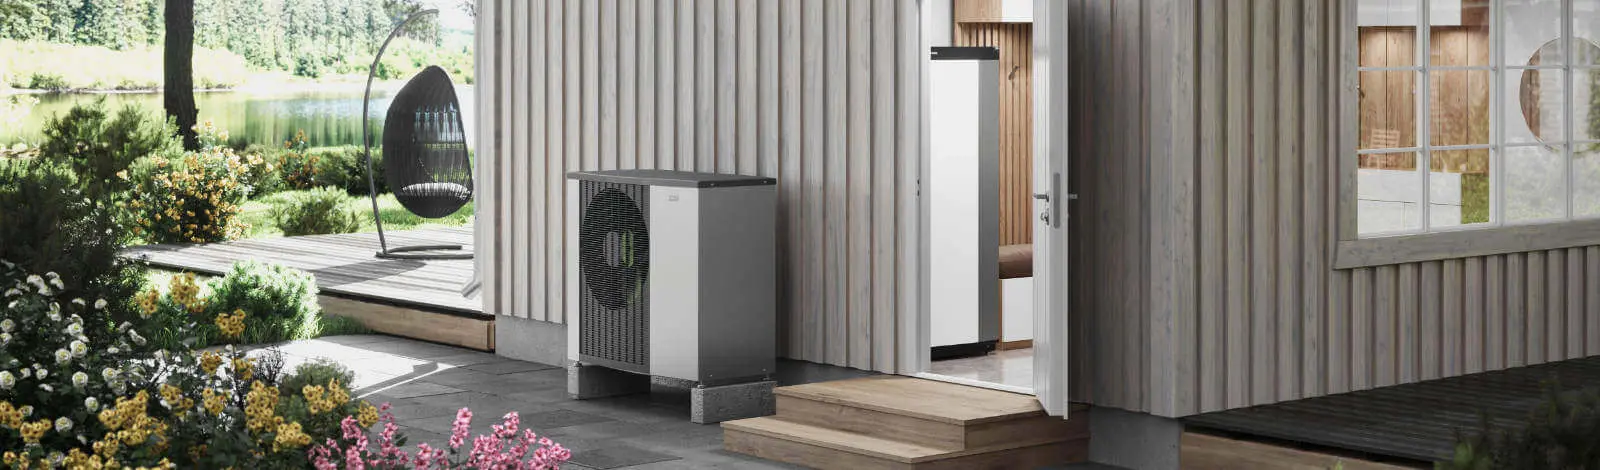 Nutzen Sie die freie und erneuerbare Energie aus der Außenluft mit Luft/Wasser Wärmepumpen von NIBE 